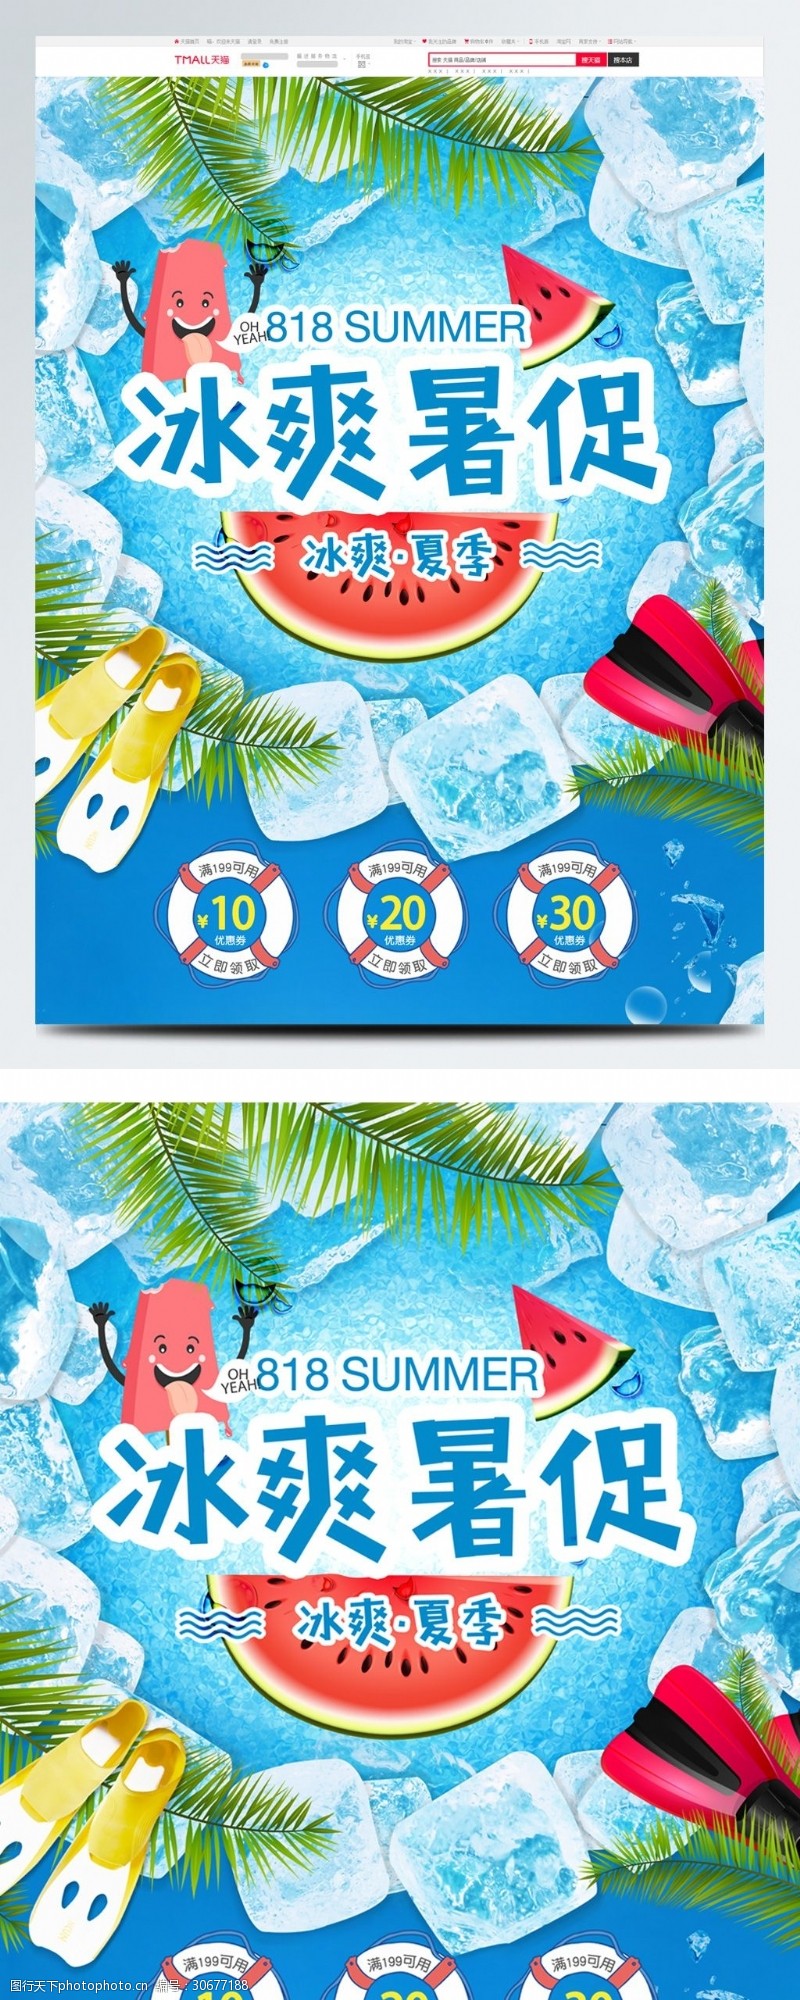 清爽风818暑促暑假促销暑期大促首页海报